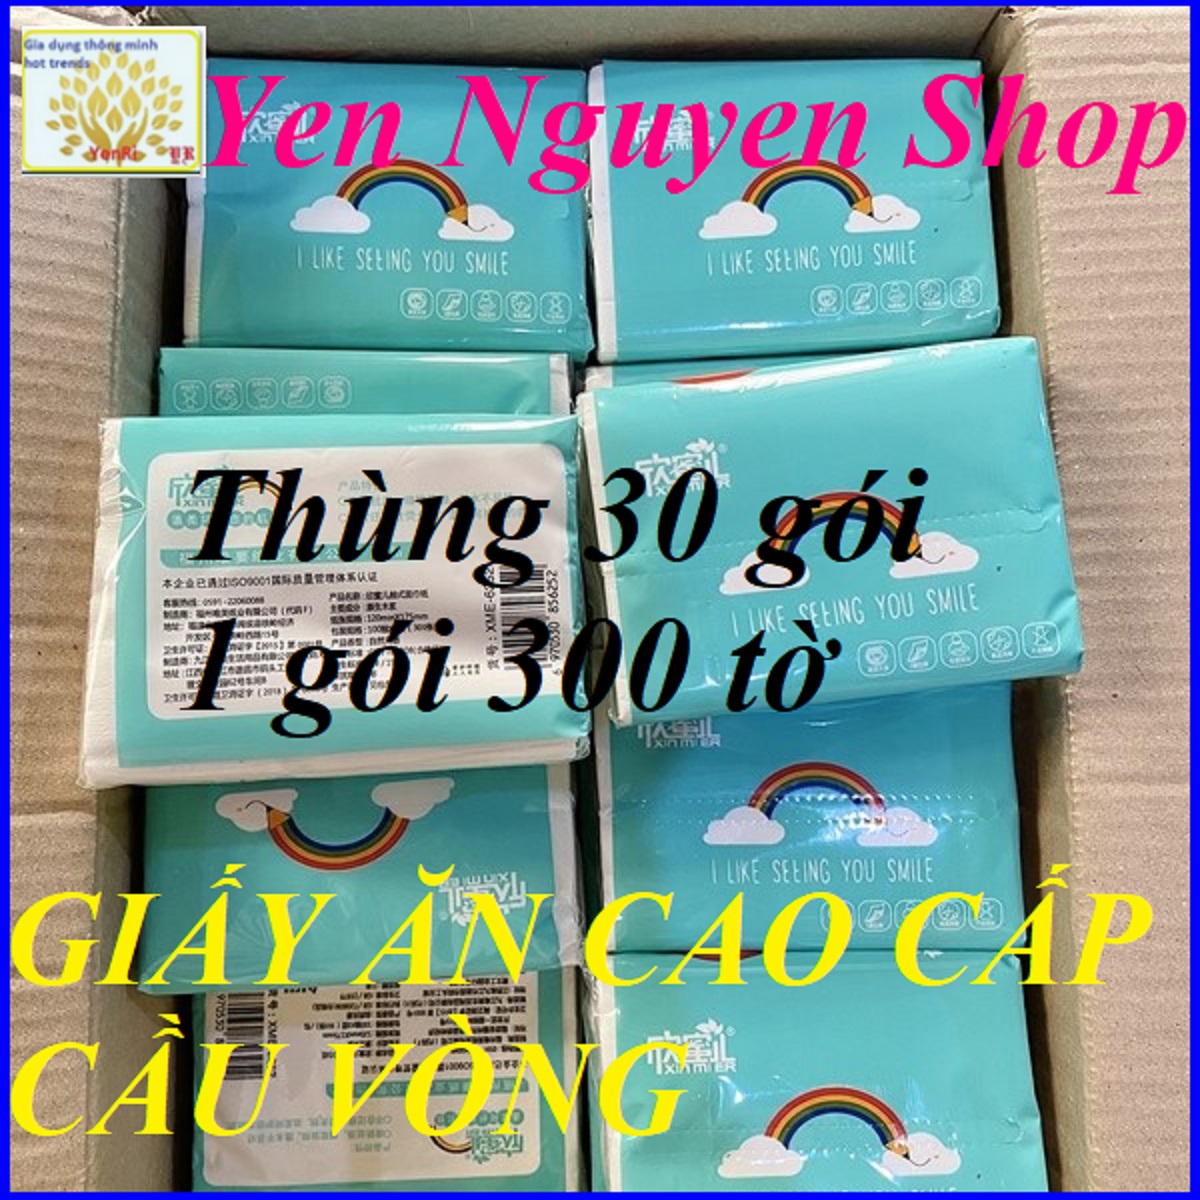 THÙNG 30 GÓI GIẤY ĂN CẦU VỒNG  300 tờ gói  - Yen Nguyen Shop